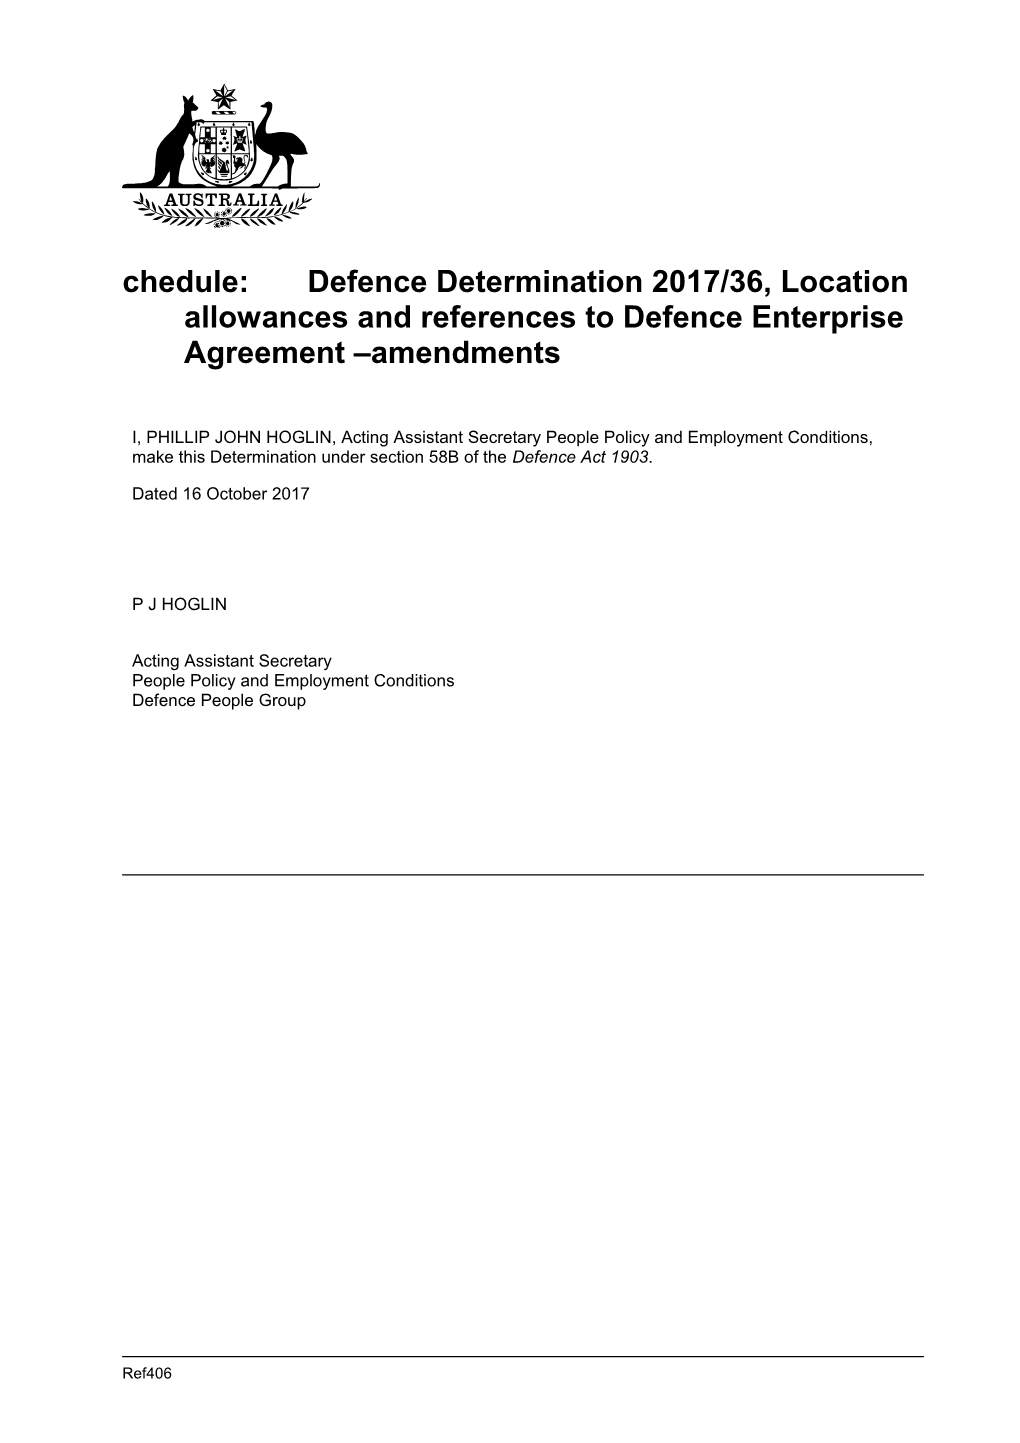 Schedule1 Defence Enterprise Agreement Amendments